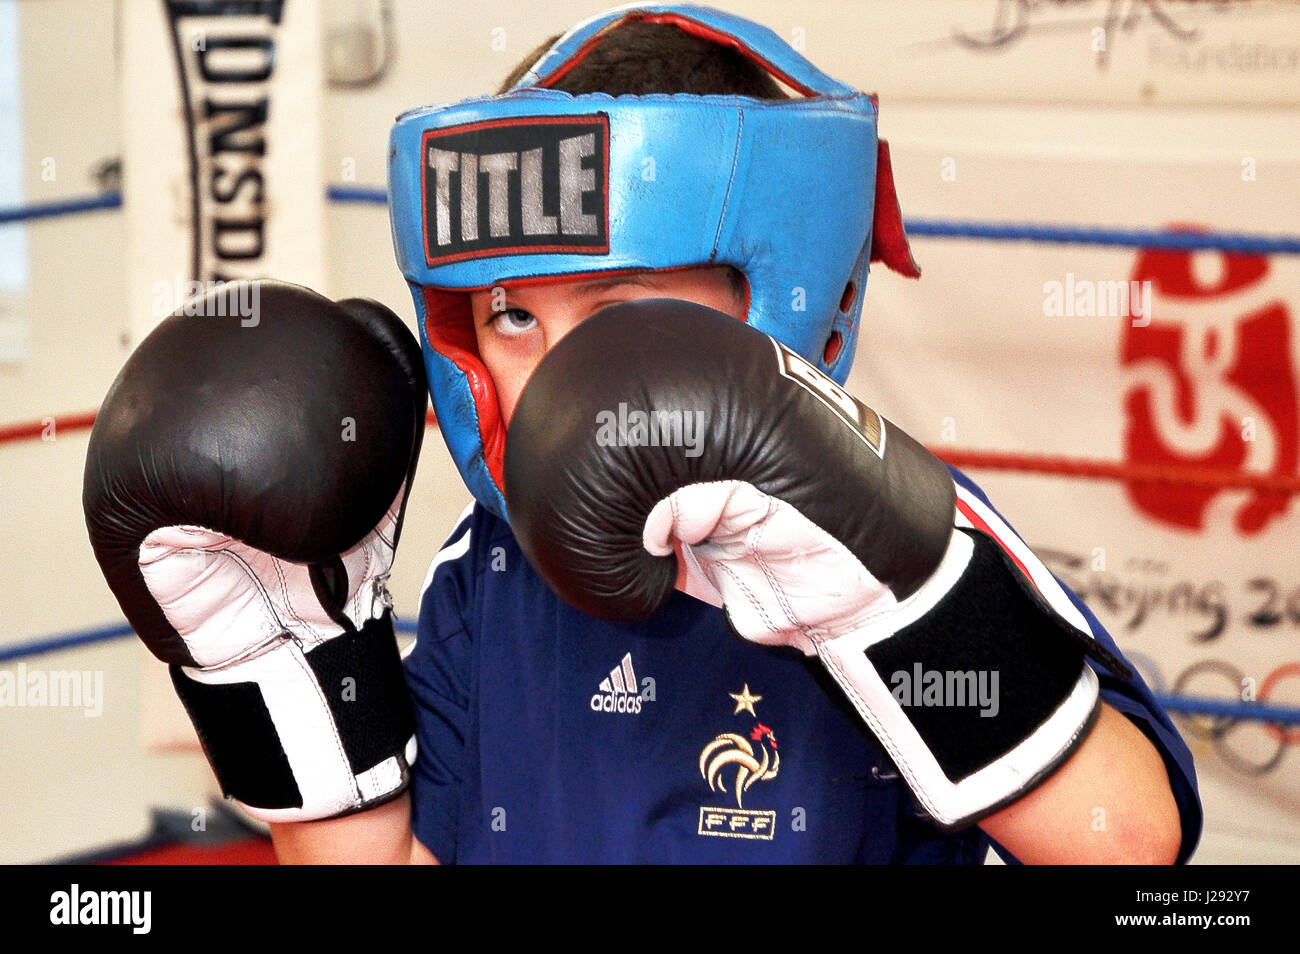 Junge Amateur-Boxer vor dem Schlafengehen in den Ring zu Holm. Aufgenommen in einem Fitnessstudio im Nord-Osten Englands Stockfoto